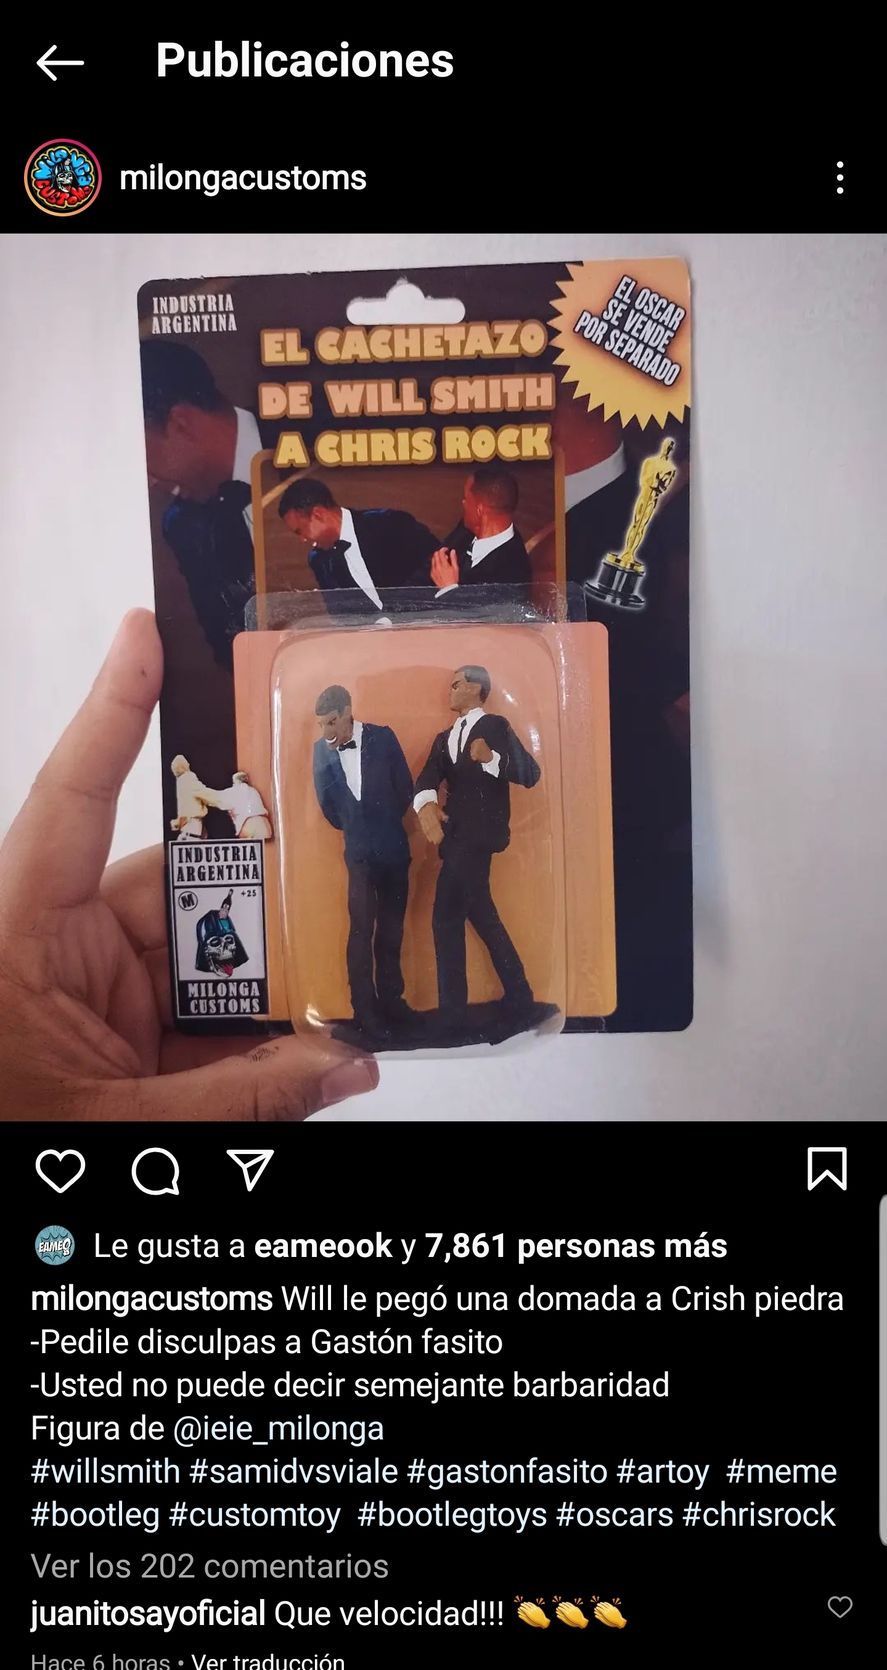 La publicación argentina en Instagram que muestra el muñeco de Will Smith abofeteando al de Chris Rock, como sucedió durante la premiación de los Oscar la noche del domingo 